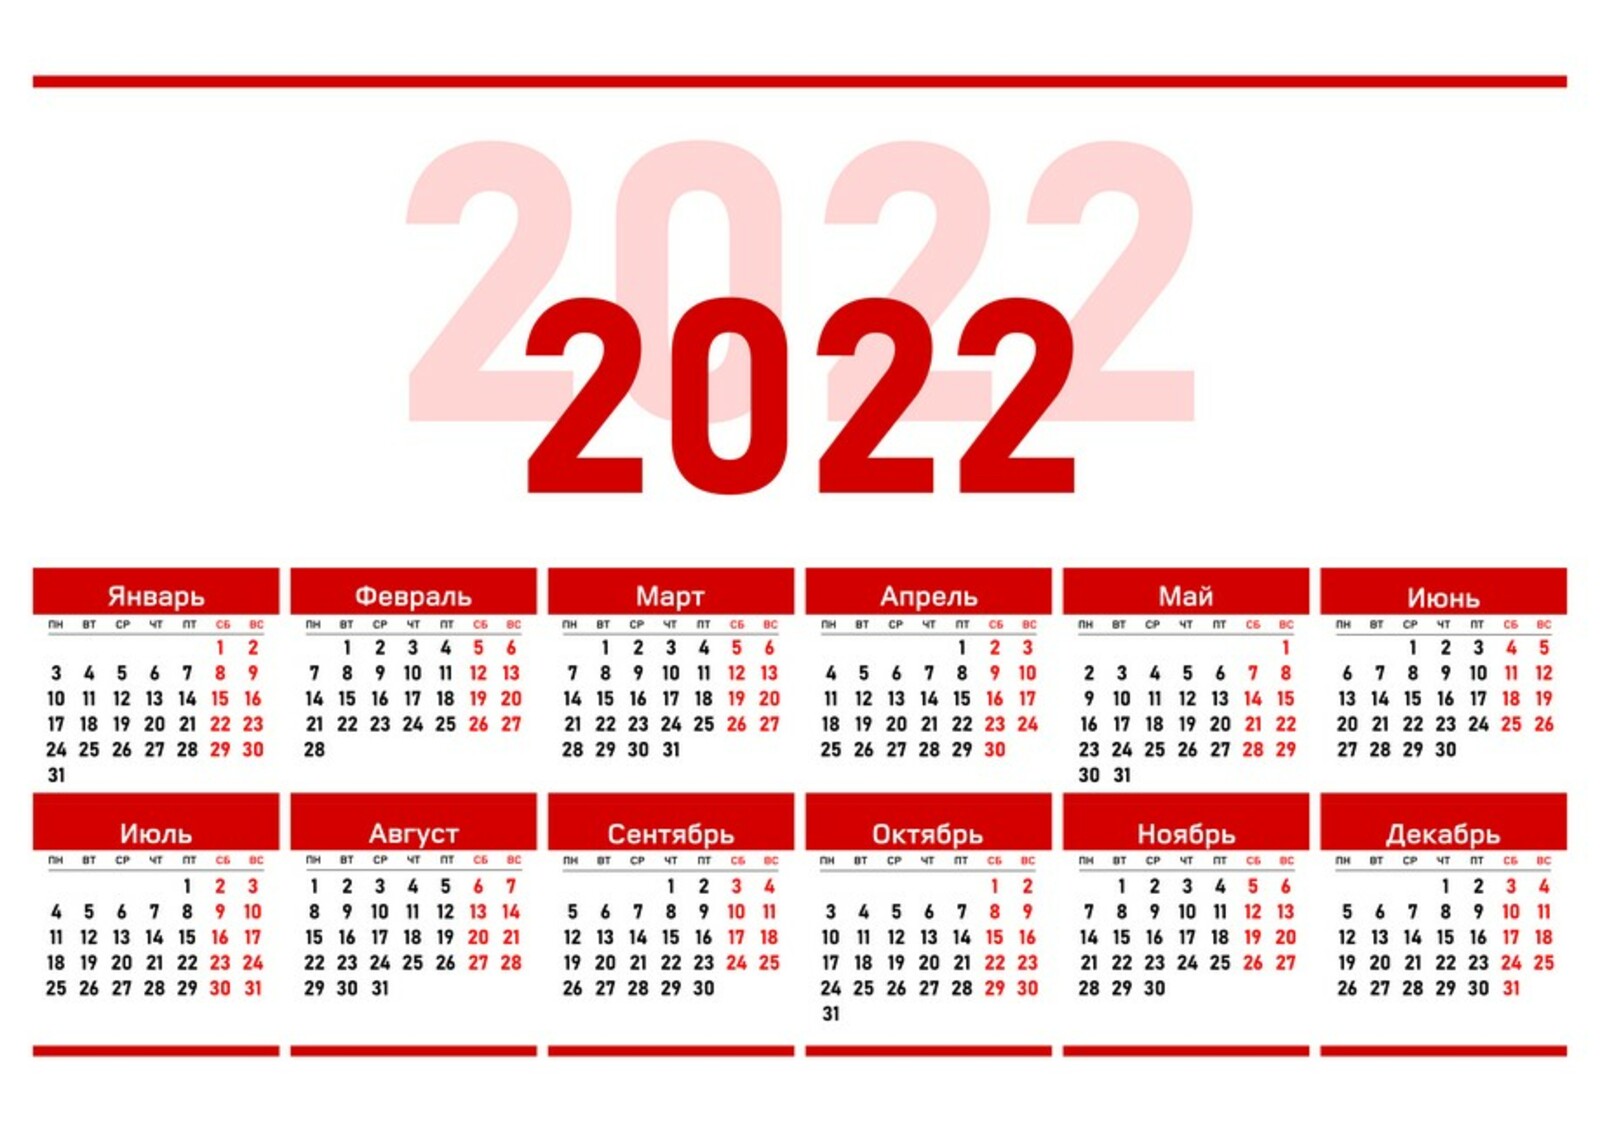 Сколько лет до 31 декабря. Календарь на 2022 год ЛНР. Официальные праздники 2022 года в России. Выходные дни в 2022 году в России. Рабочий календарь на 2022.